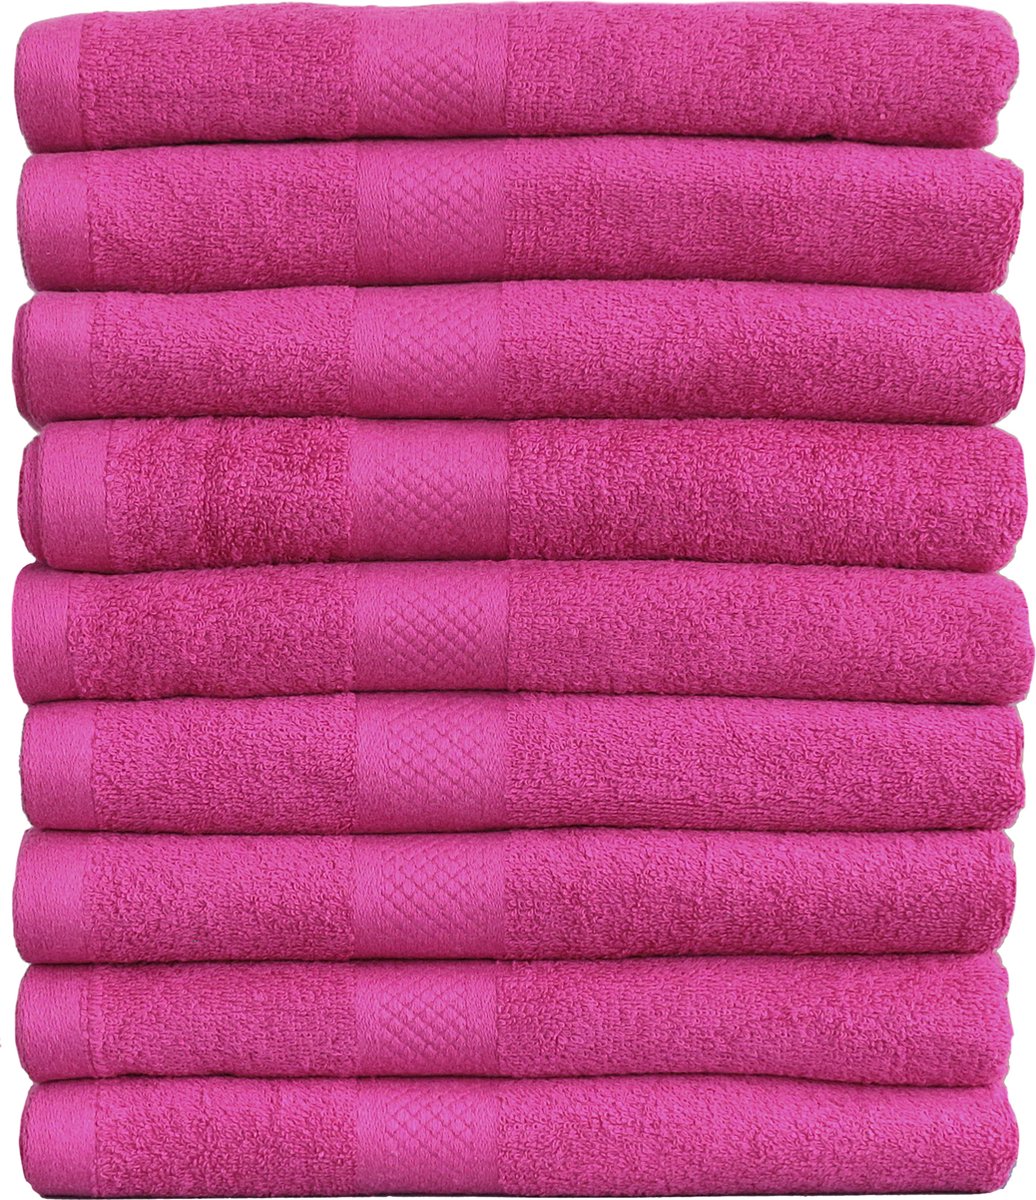 Handdoek Hotel Collectie - 9 stuks - 50x100 - roze